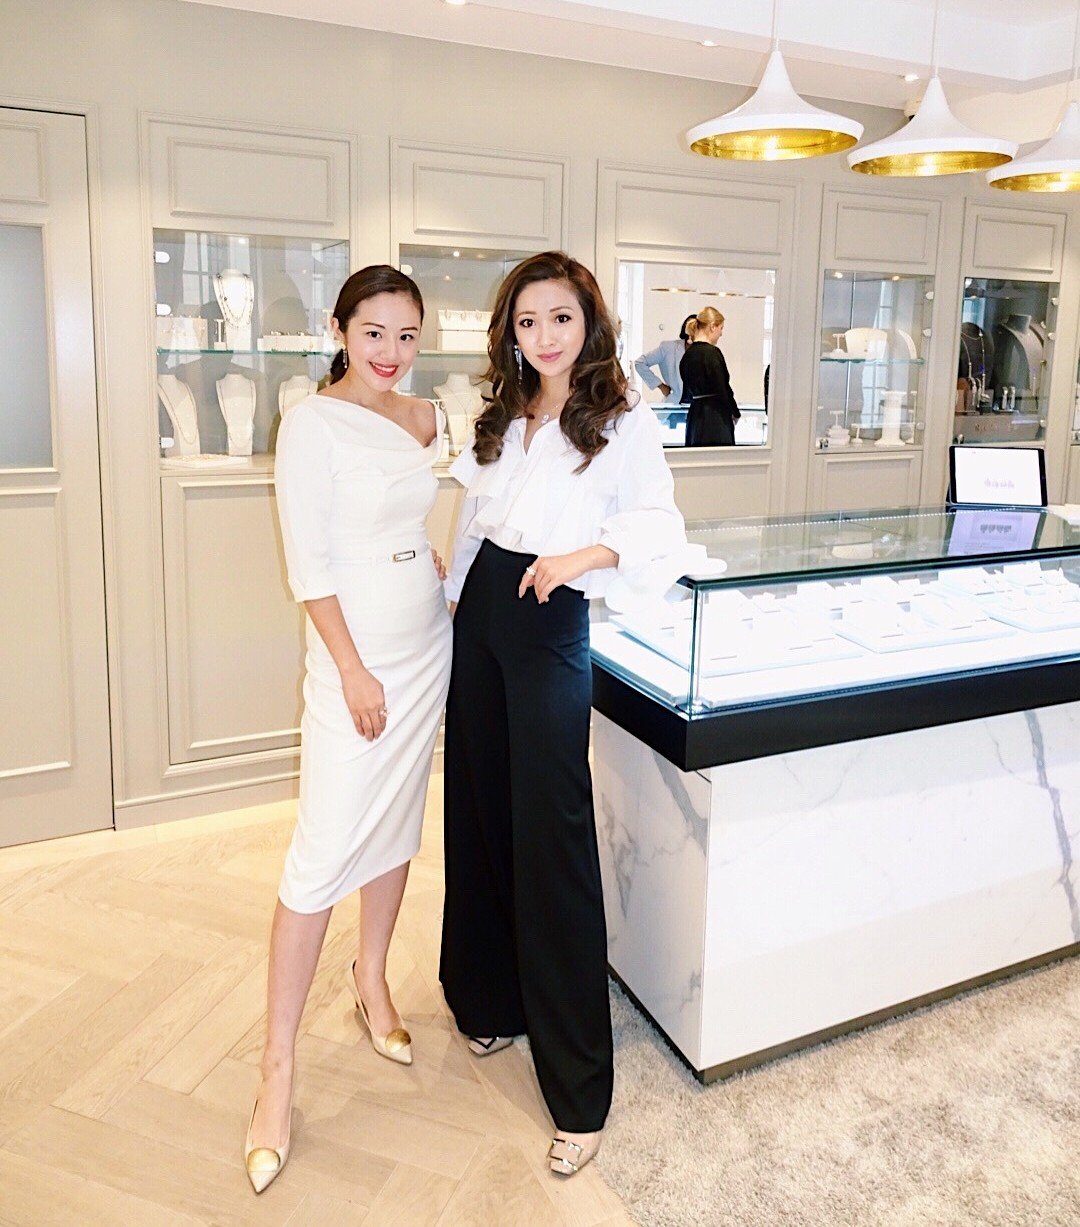 Fiona and Sarah Zhuang. Photo via Instagram @sarah.zhuang